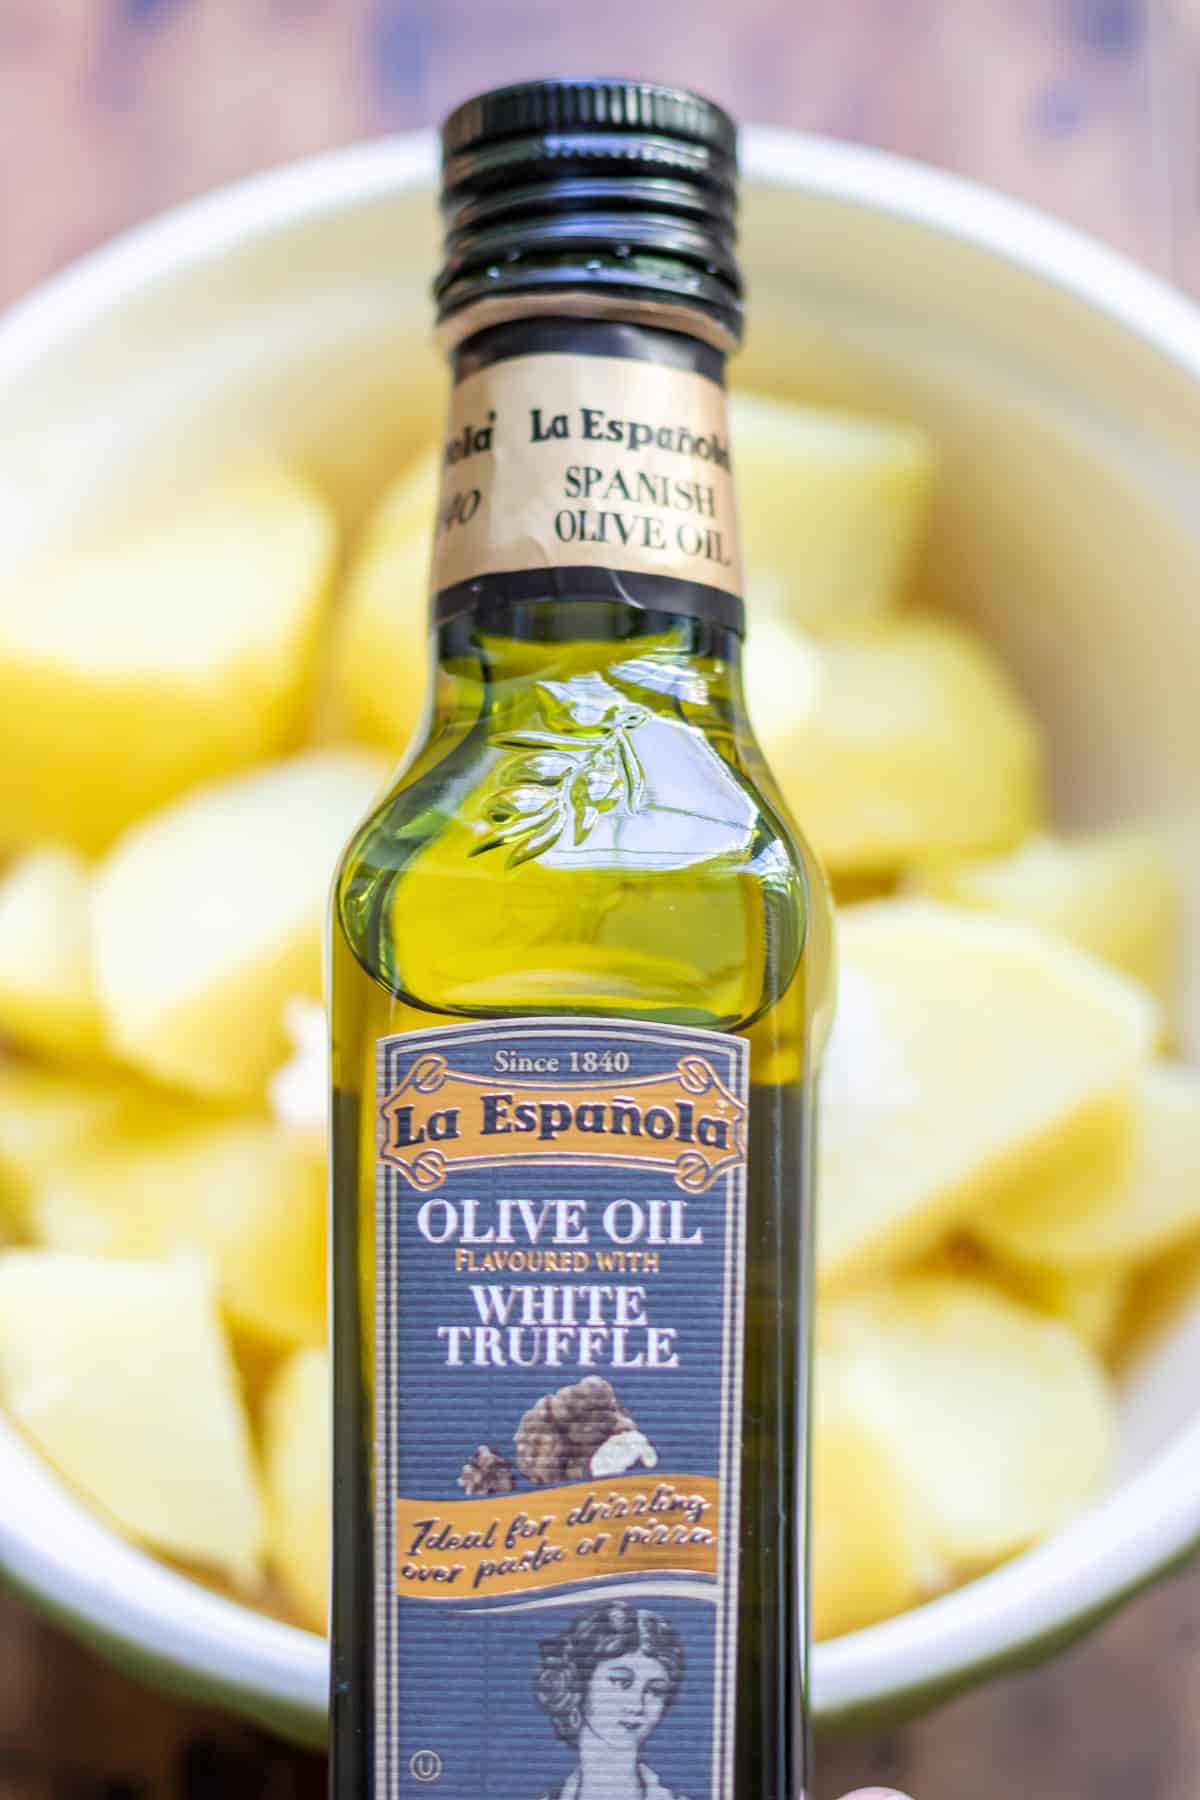 A bottle of truffle oil.